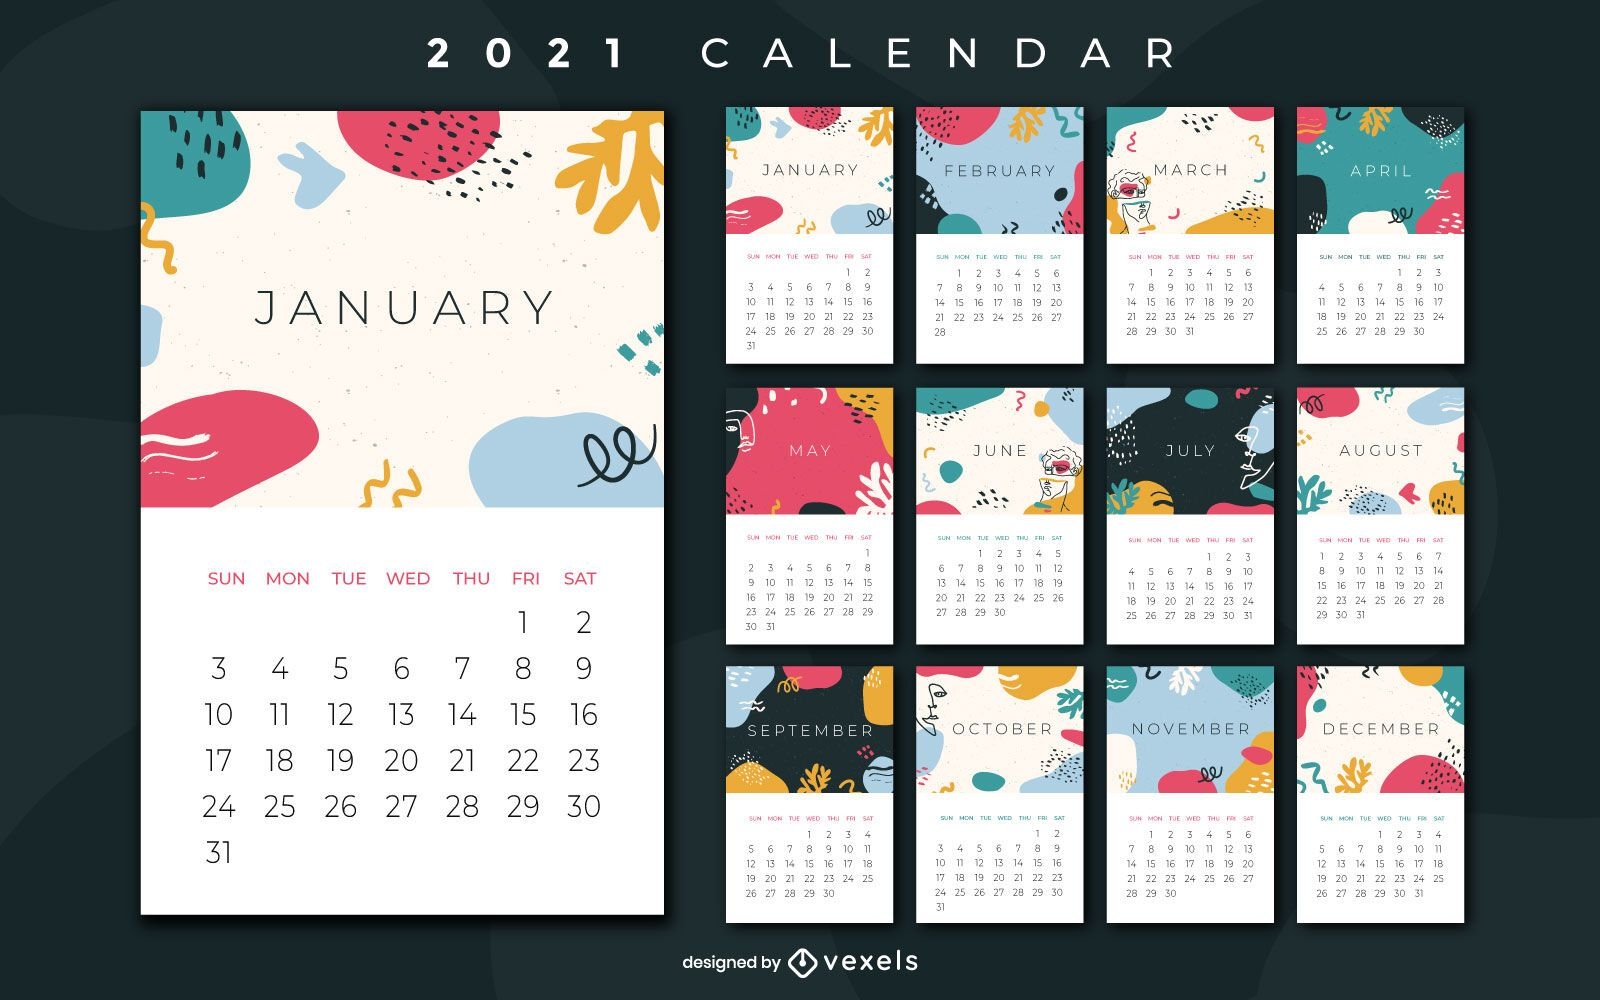 Abstract 2021 calendar design